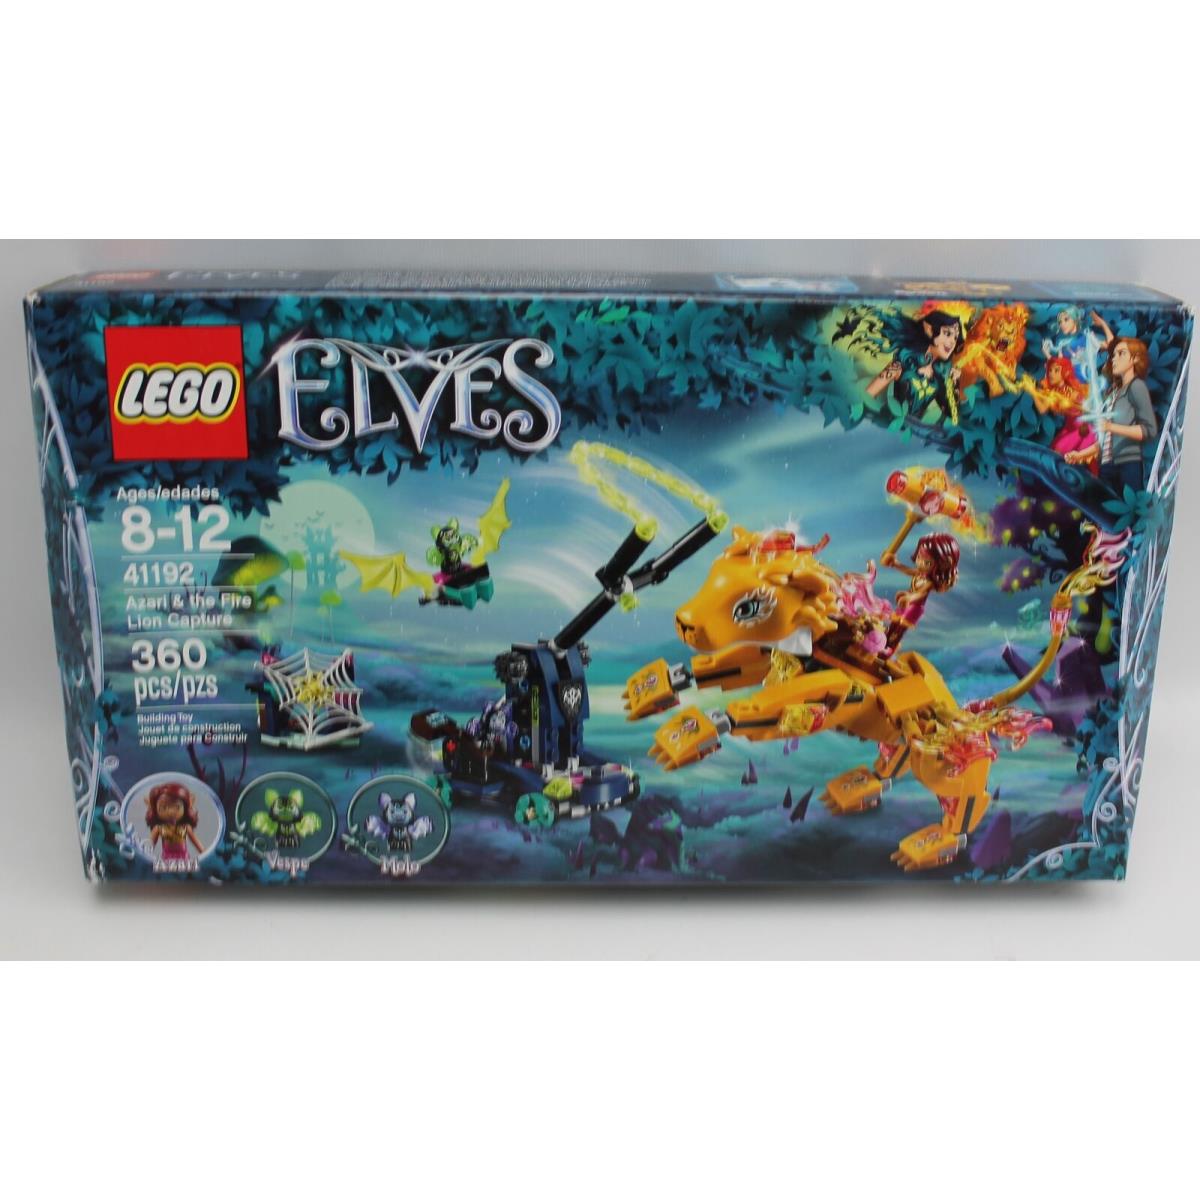 Lego Elves Azari The Fire Lion Capture Set 41192